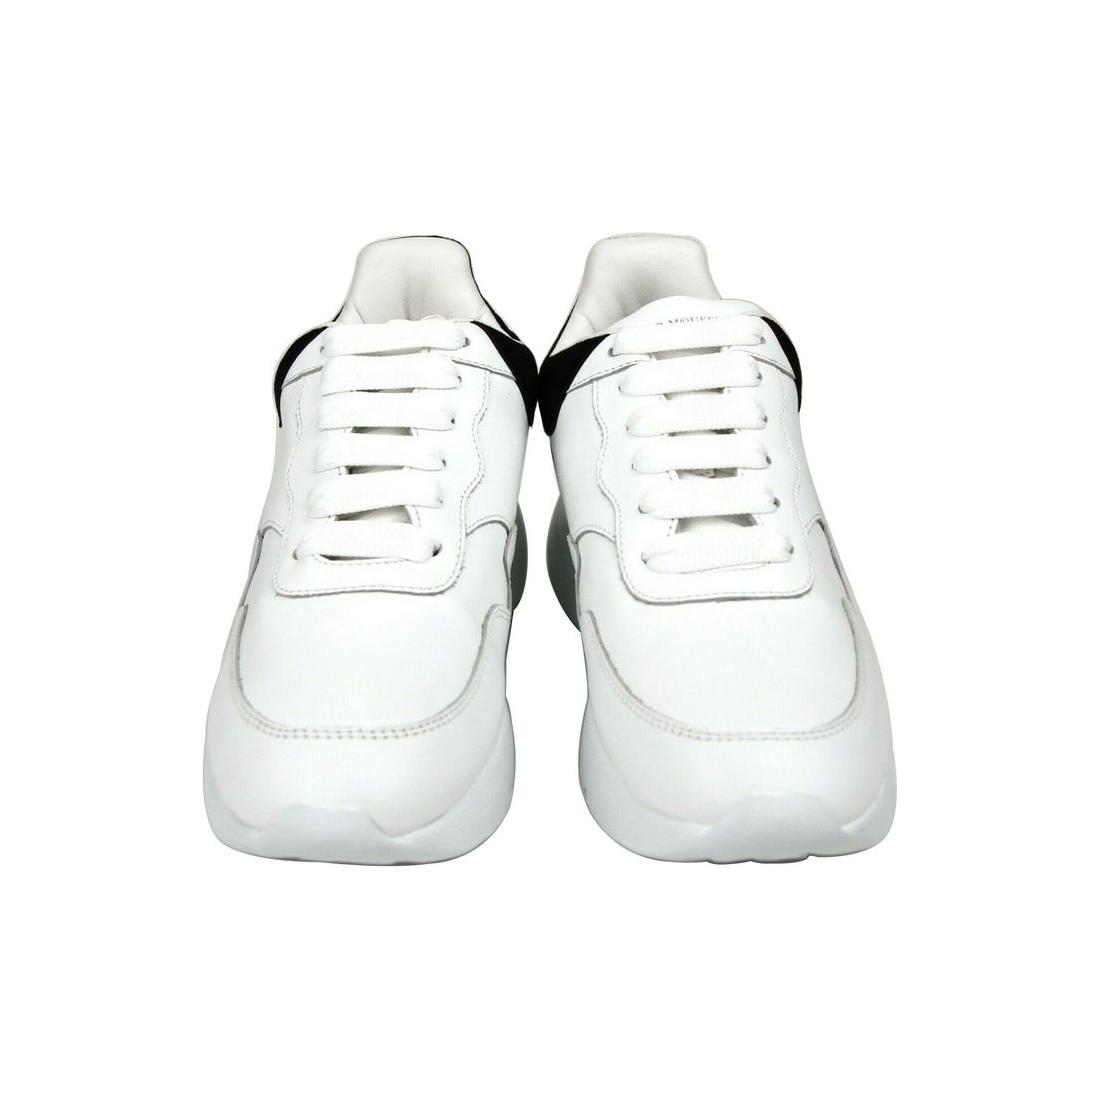 Alexander McQueen Alexander McQueen Women White Leather Suede Sneaker alexander-mcqueen-women-white-leather-suede-sneaker